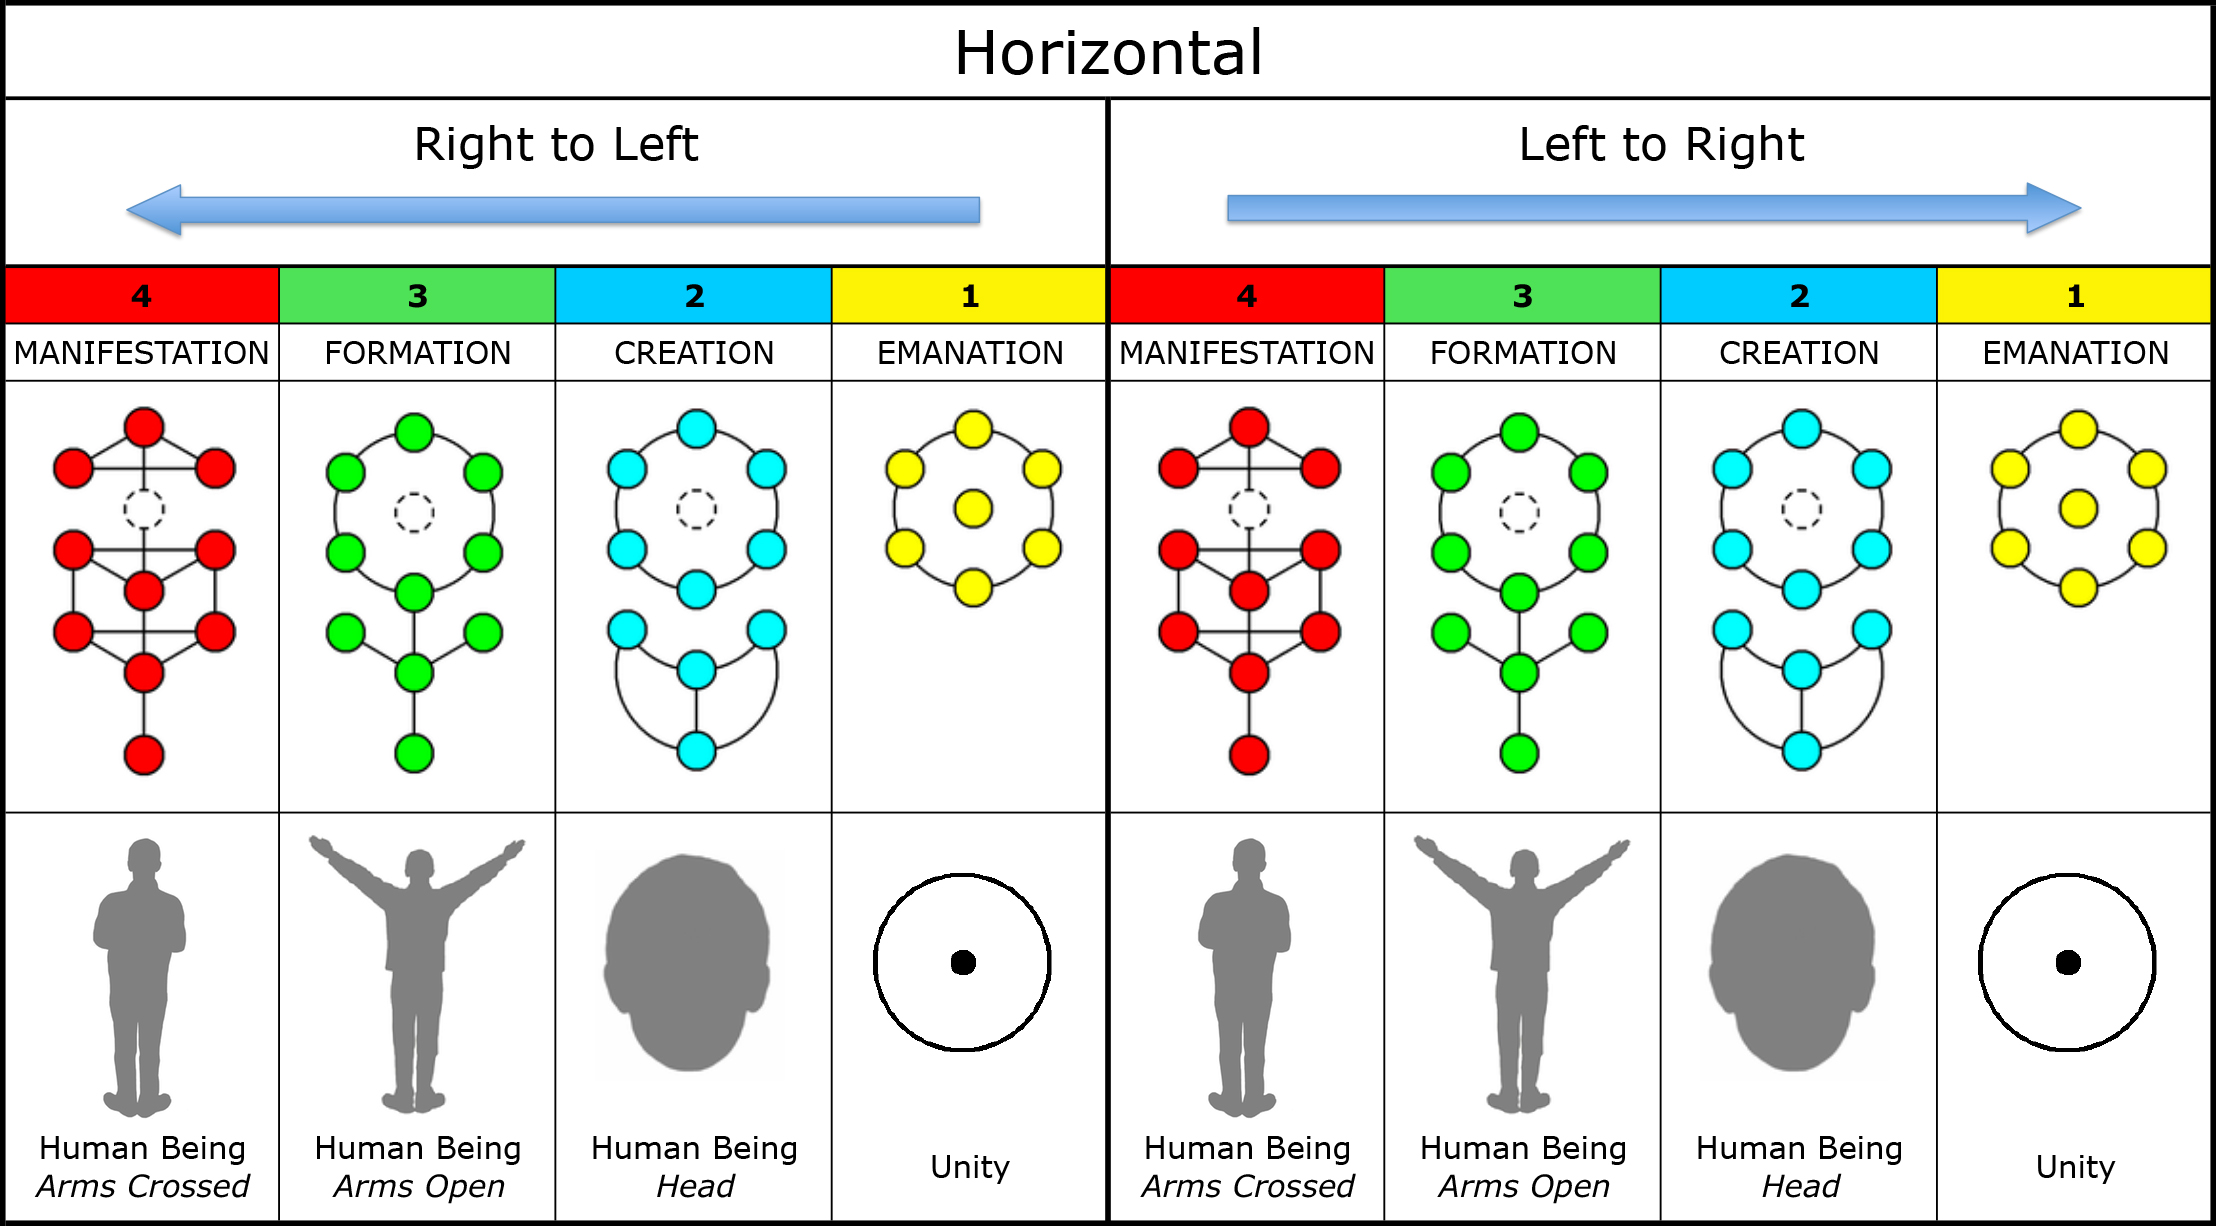 Chart-010a-Horizontal-Life-RL-LR.xlsx